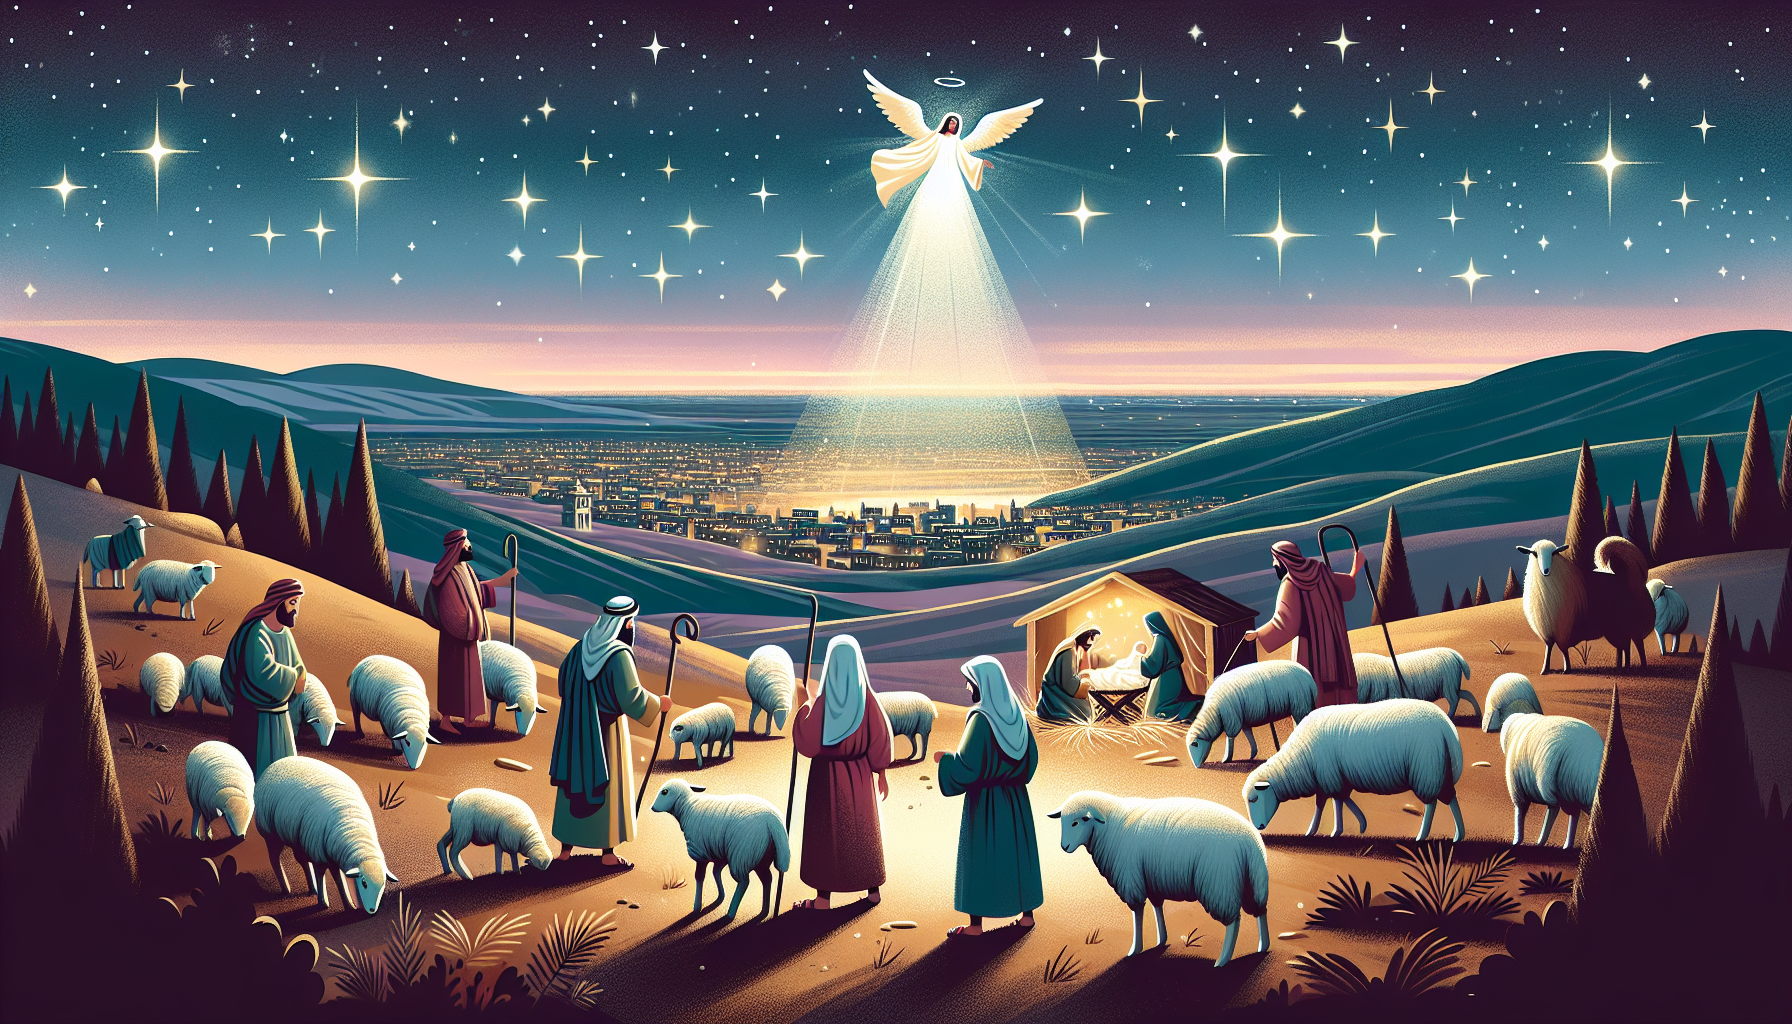 Una escena nocturna en las afueras de Belén donde pastores están cuidando sus ovejas bajo el cielo estrellado. Un ángel brillante aparece en el cielo anunciando el nacimiento de Jesús, mientras los pa